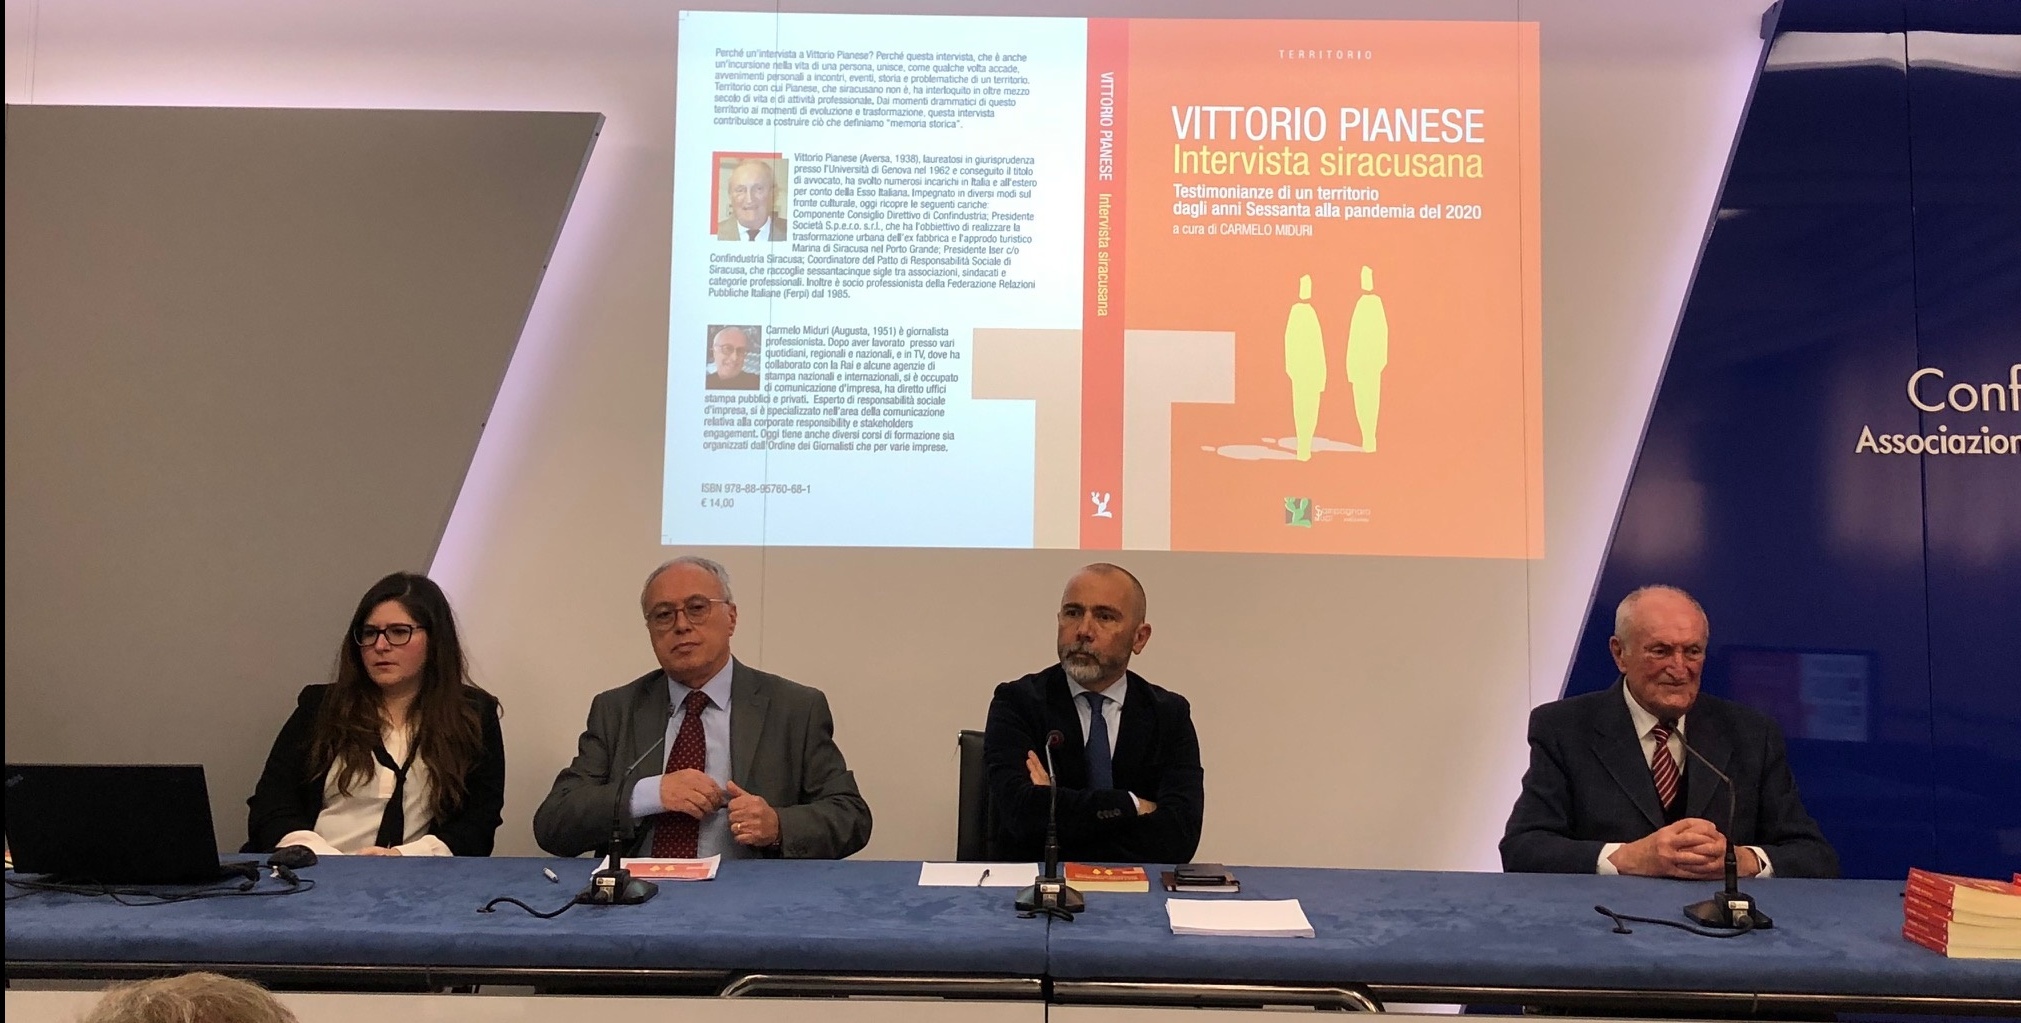 Presentato alla stampa il libro di Vittorio Pianese “intervista siracusana – testimonianze di un territorio dagli anni settanta alla pandemia del 2020”